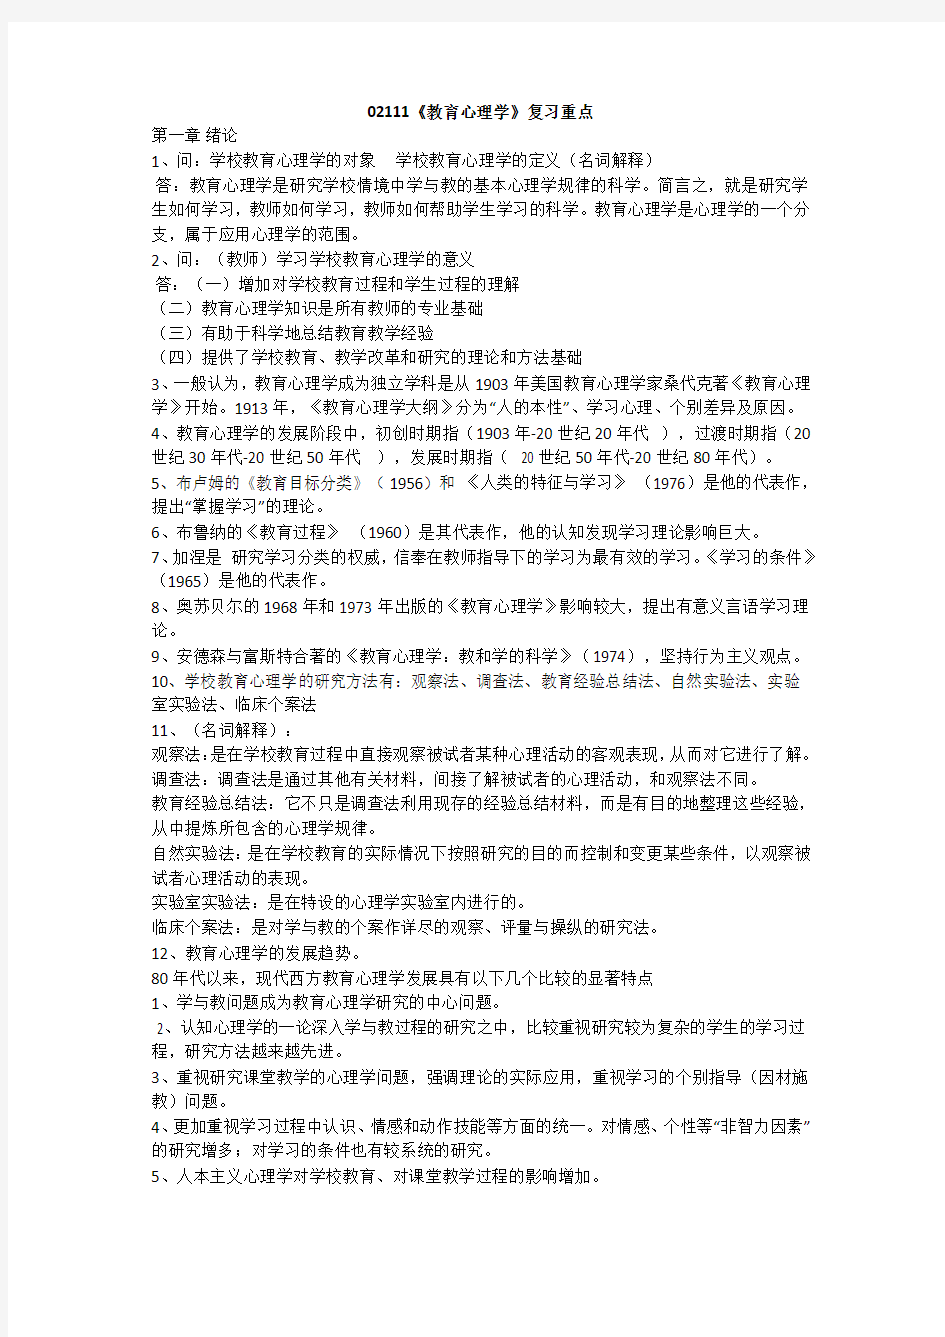 四川省高等教育自学考试教育心理学(02111)复习资料(已考过)